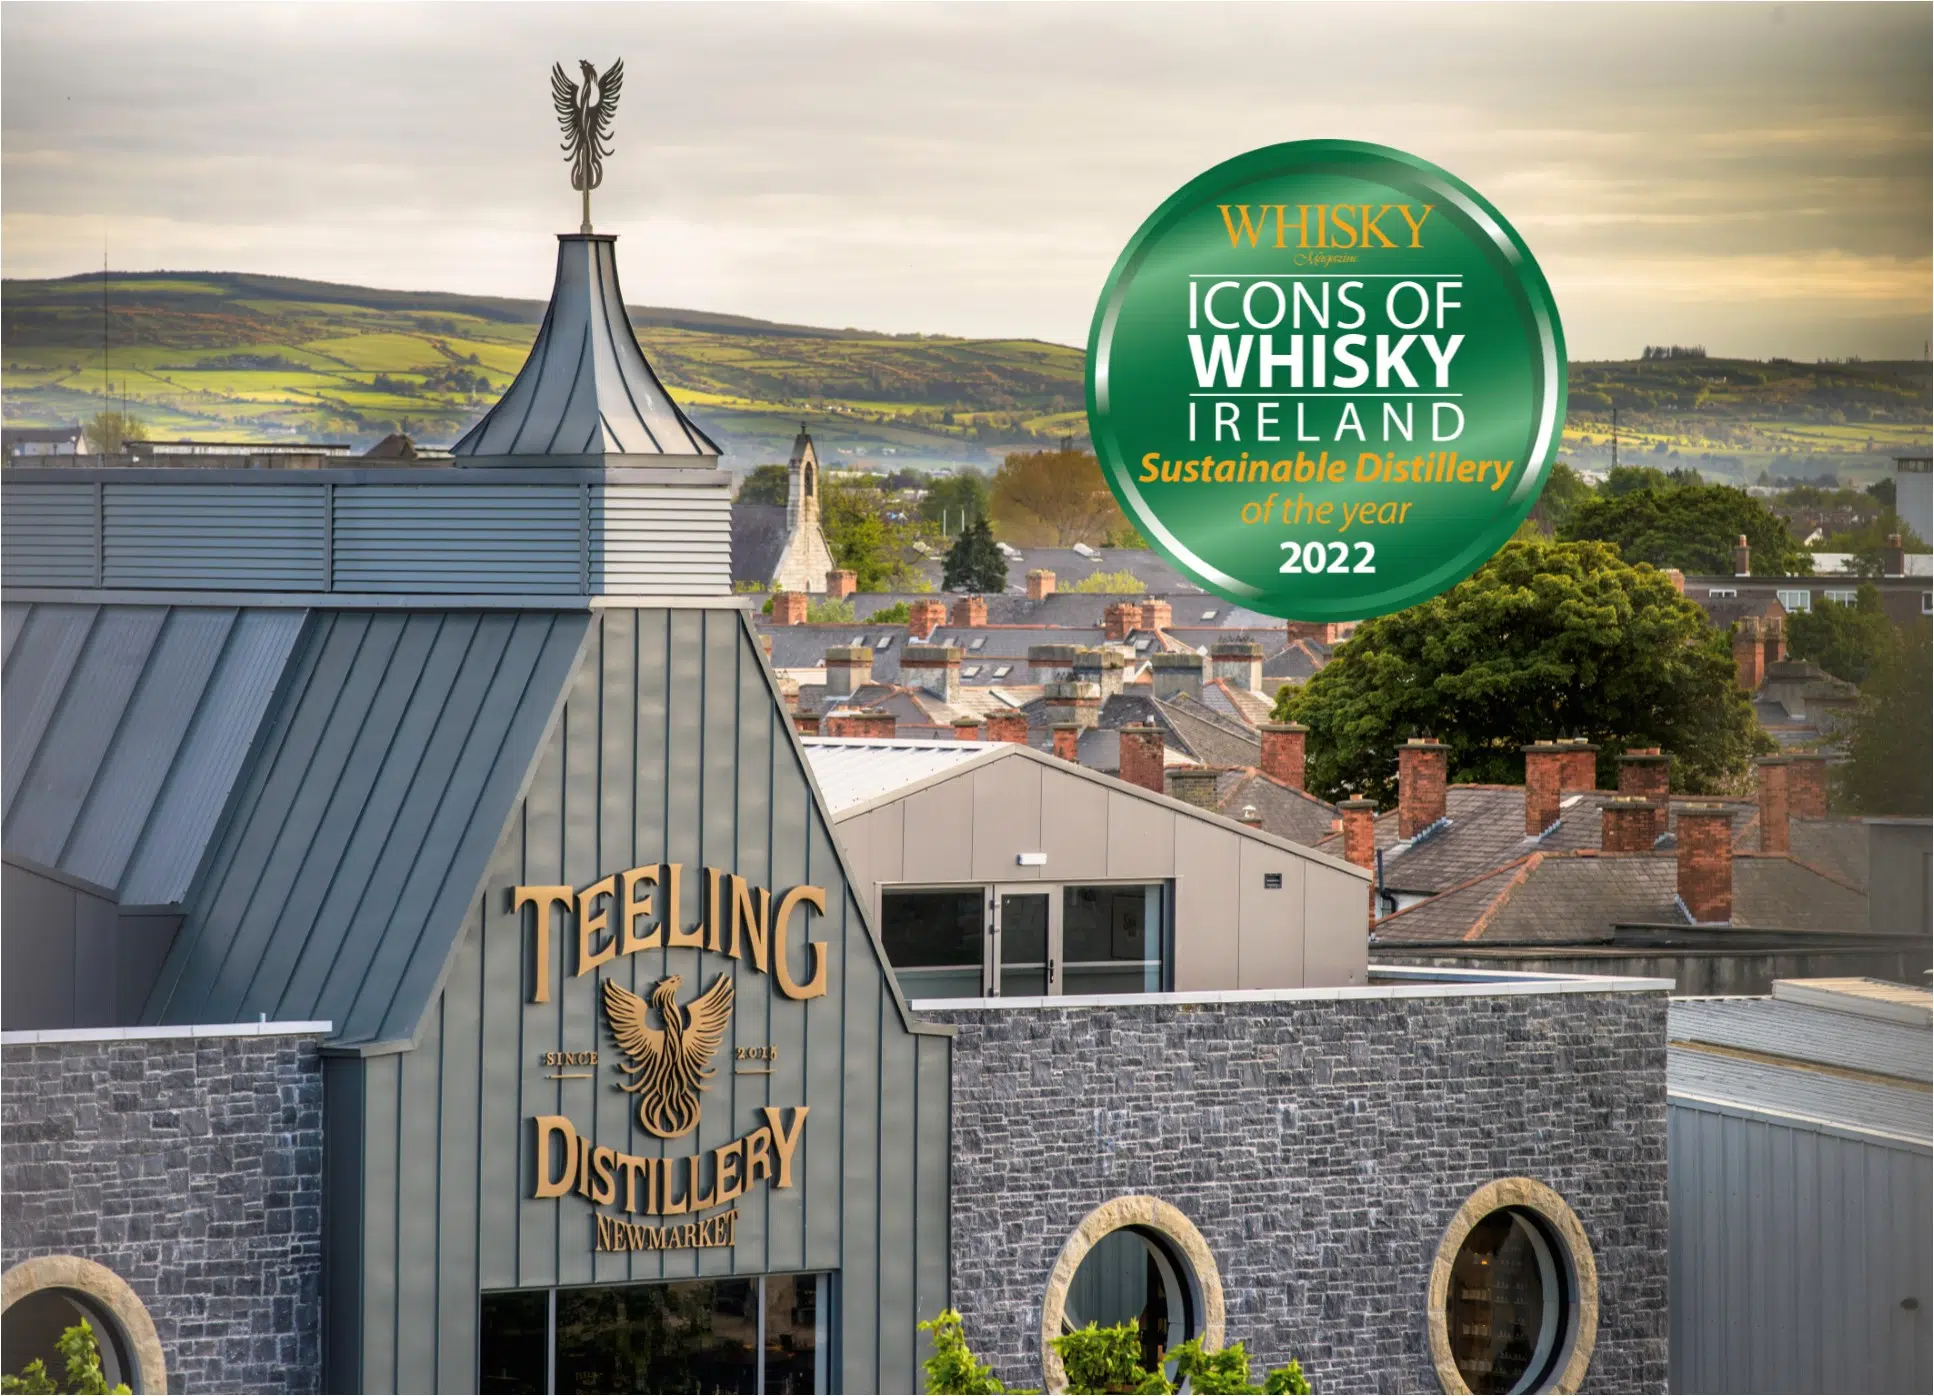 Teeling Whiskey Sustainable Distillery Award